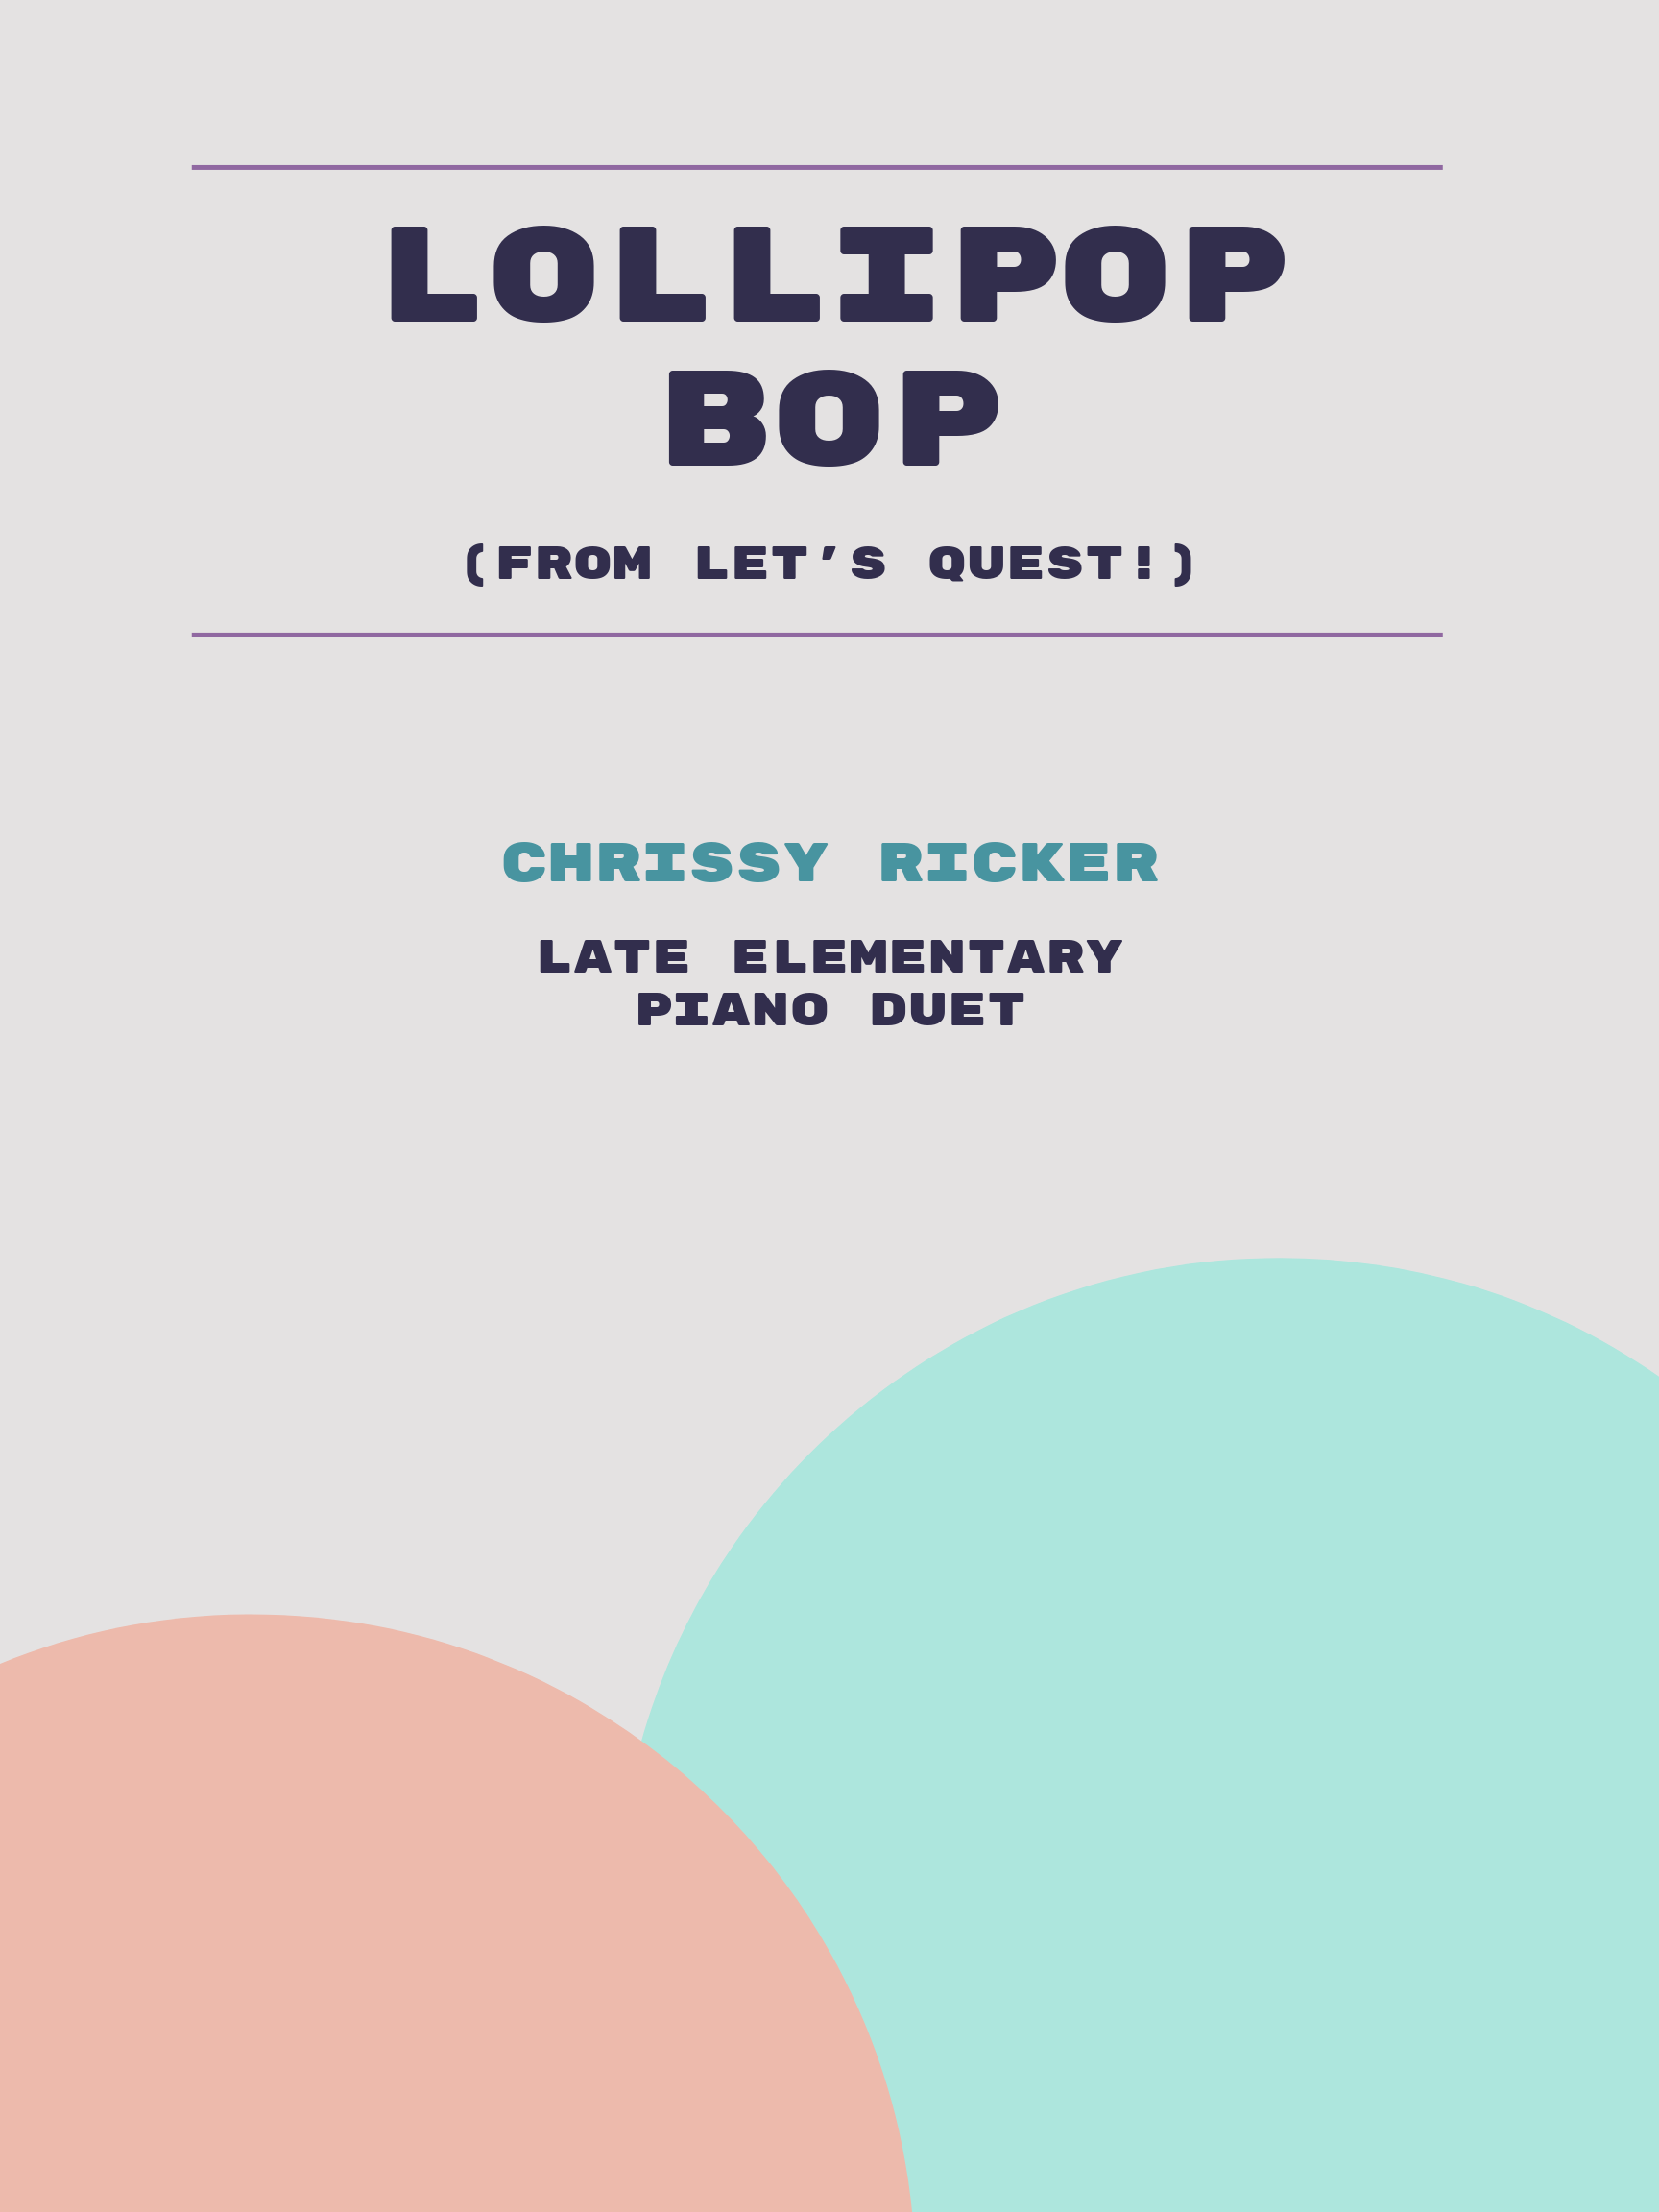 Lollipop Bop by Chrissy Ricker